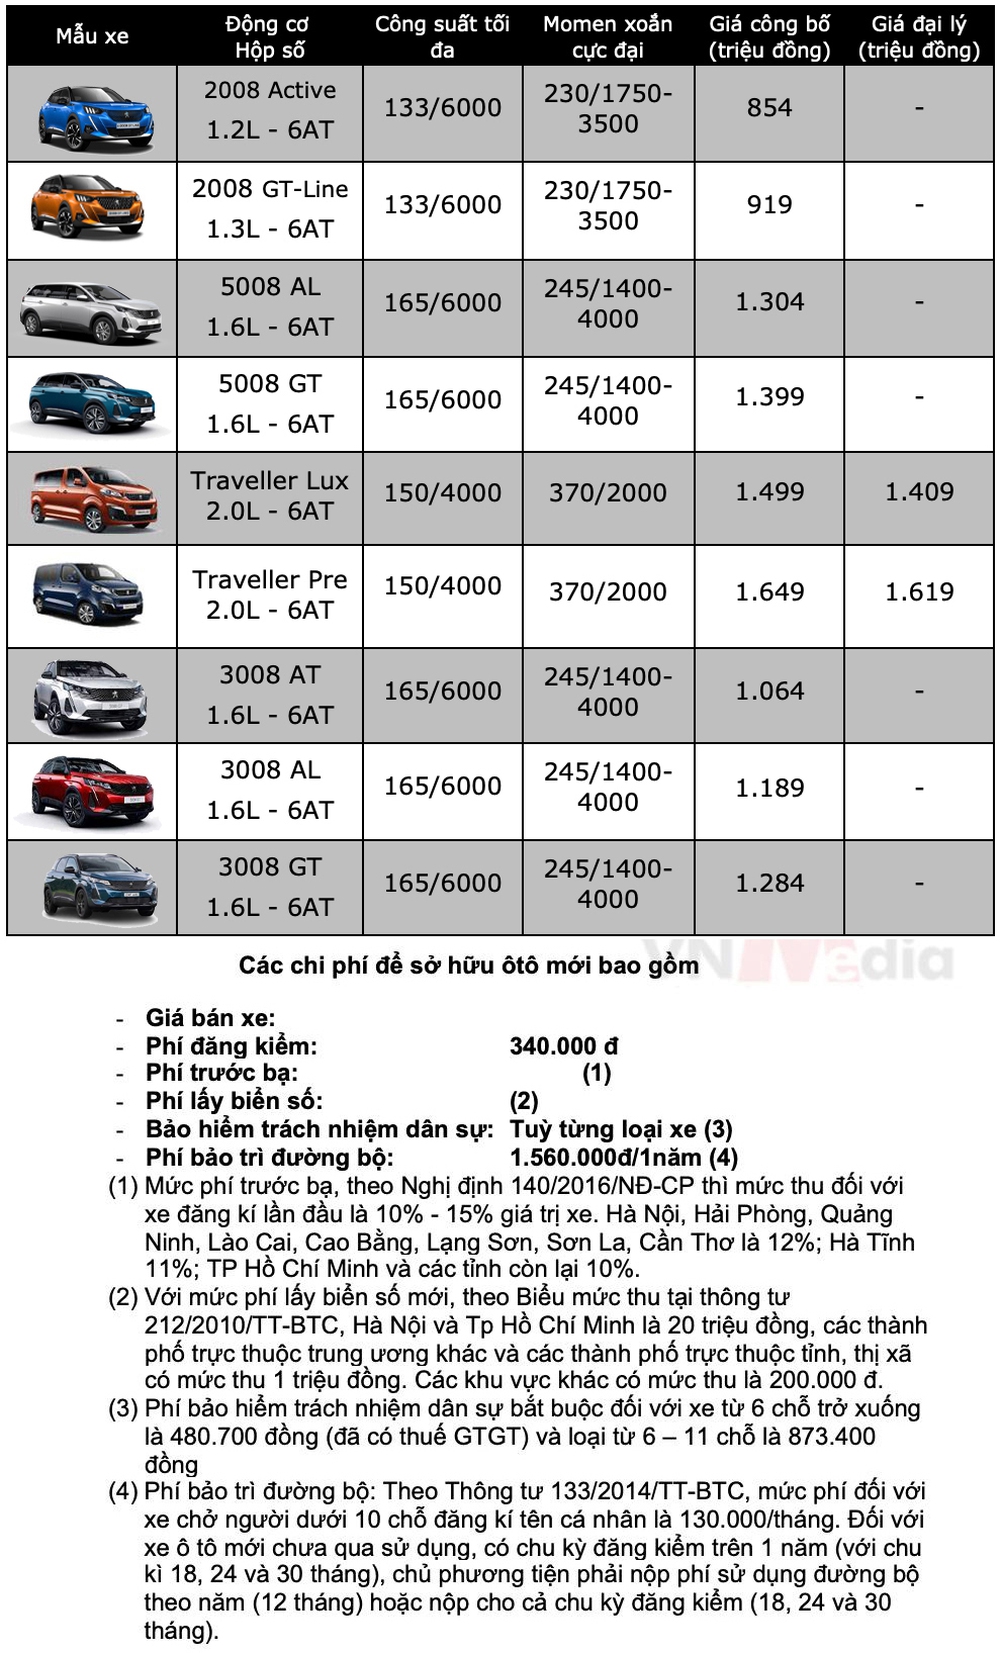 Bảng giá xe Peugeot tháng 12: Peugeot 3008 được ưu đãi hơn 50 triệu đồng - Ảnh 2.